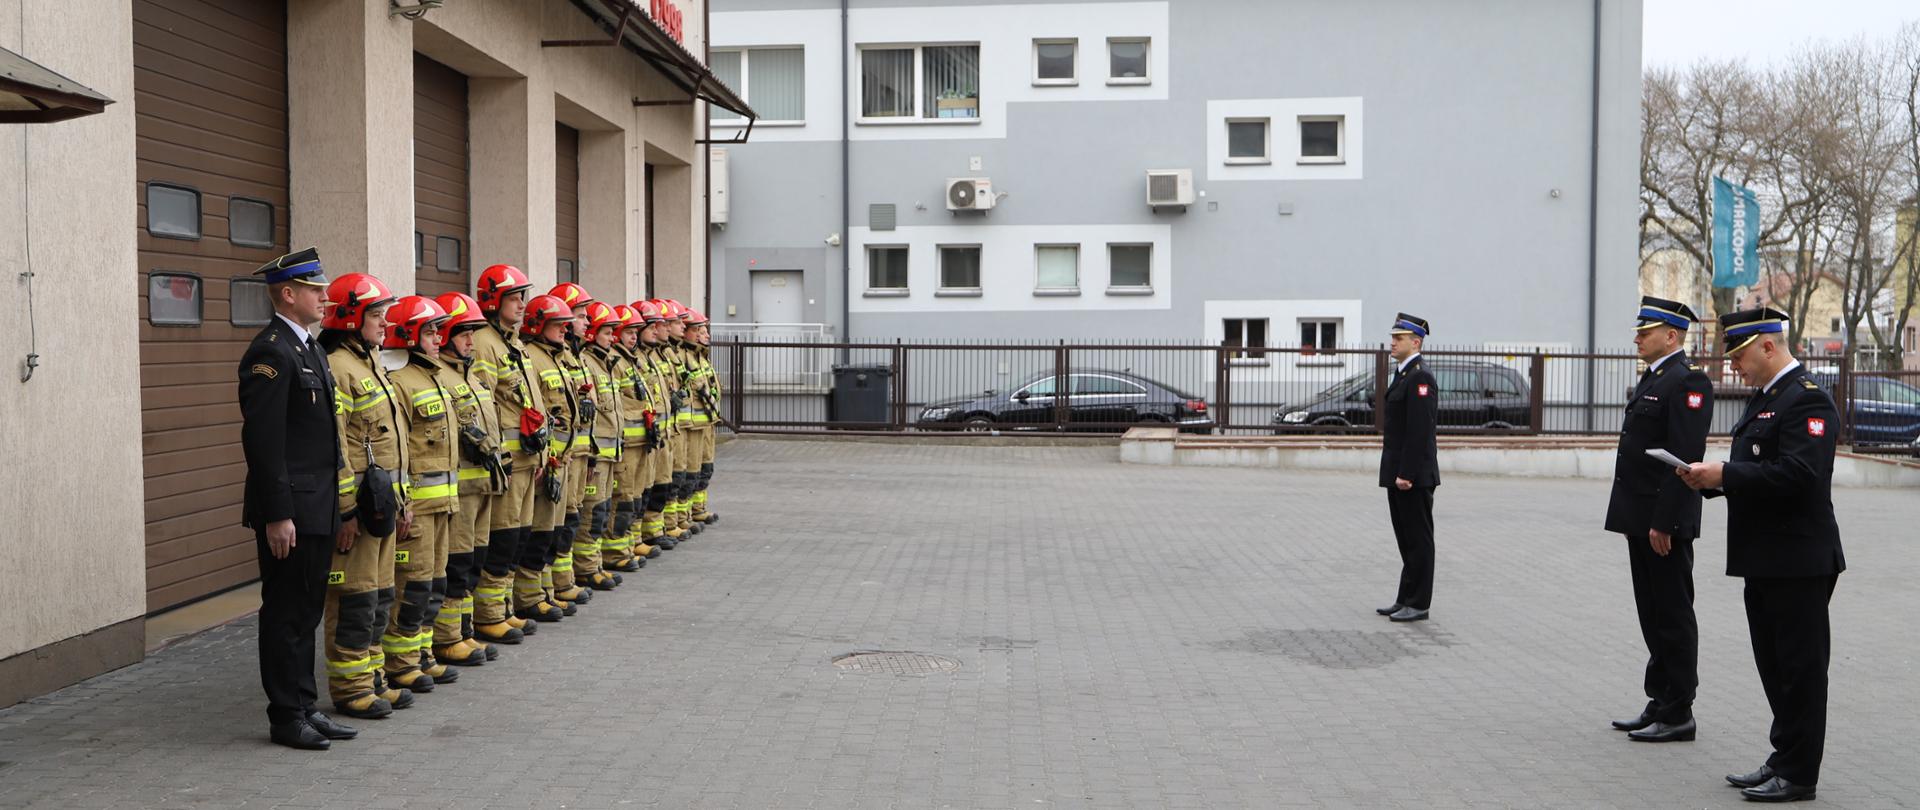 Zdjęcie przedstawia strażaków z Komendy Powiatowej Państwowej Straży Pożarnej w Zambrowie podczas uroczystego mianowania nowego Zastępcy Dowódcy Jednostki Ratowniczo-Gaśniczej w Zambrowie.